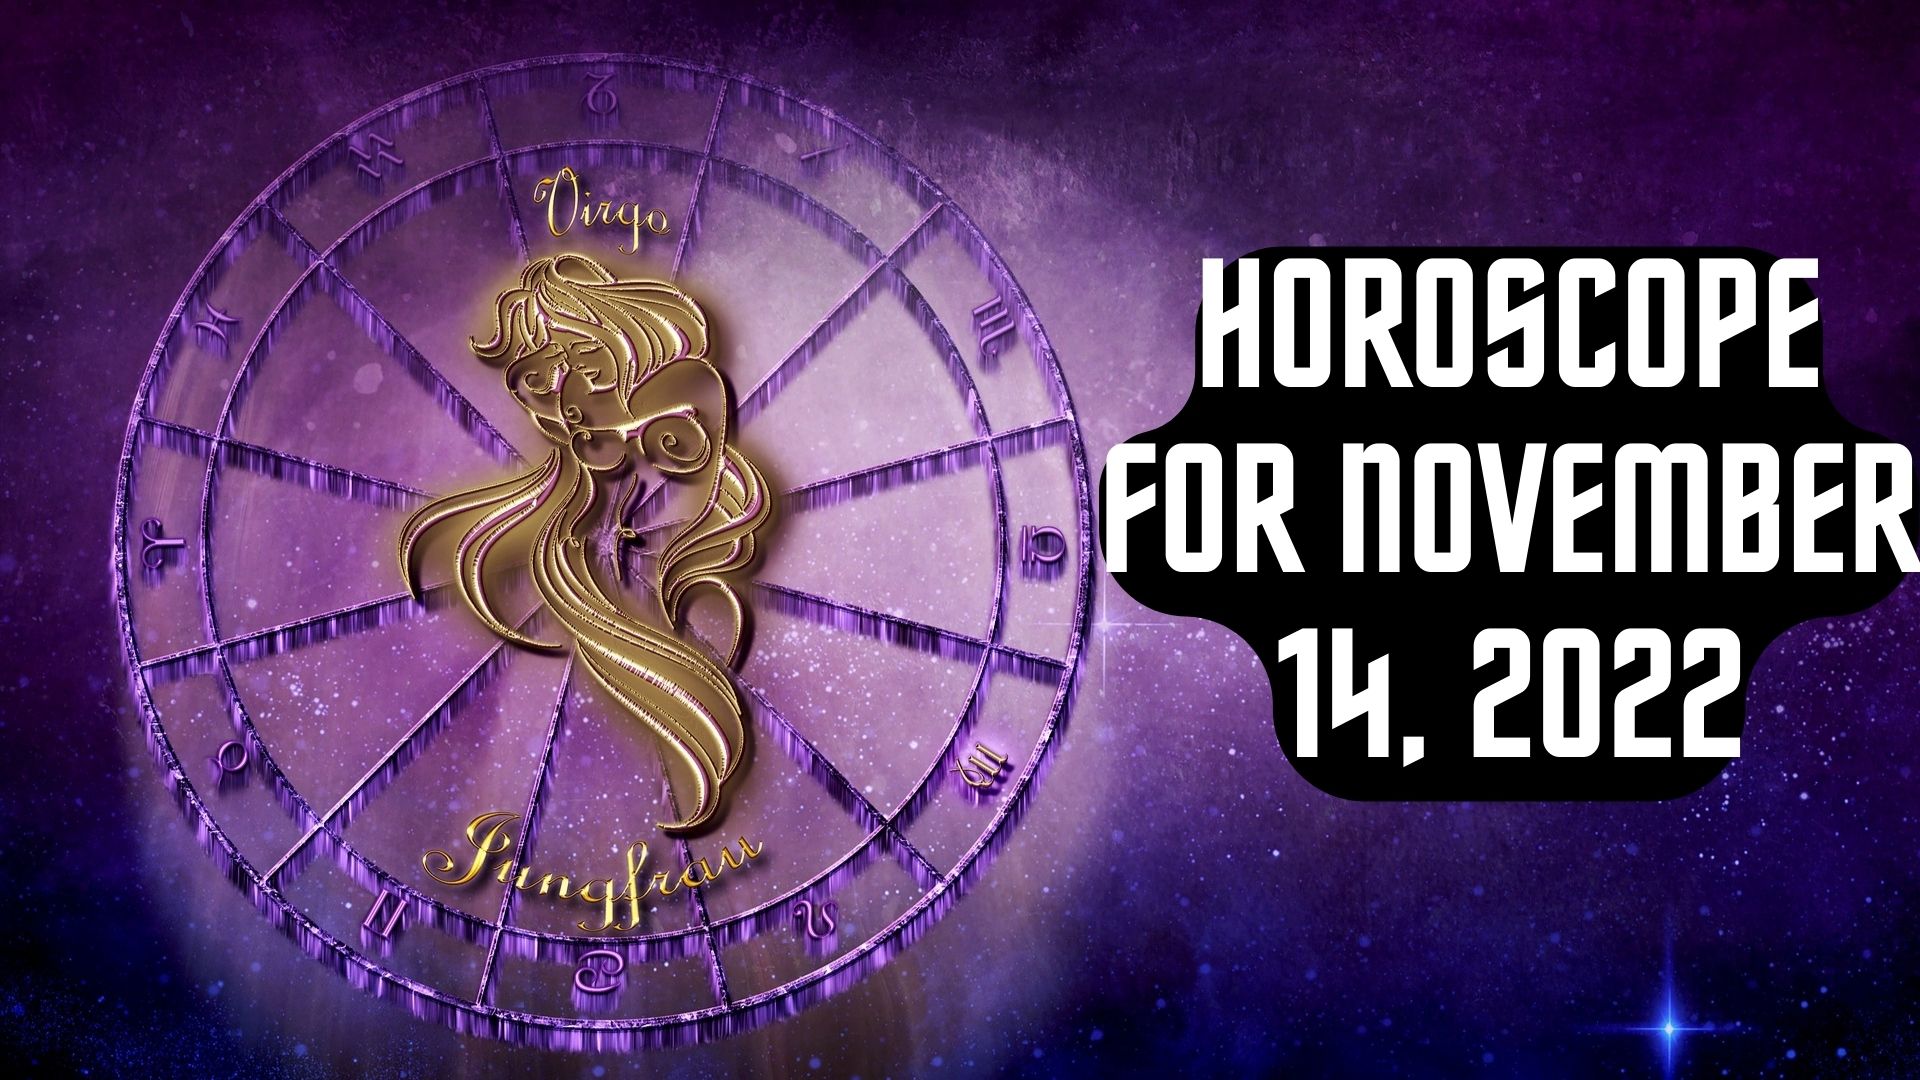 Horoscope For November 14, 2022 - Love And Relationship